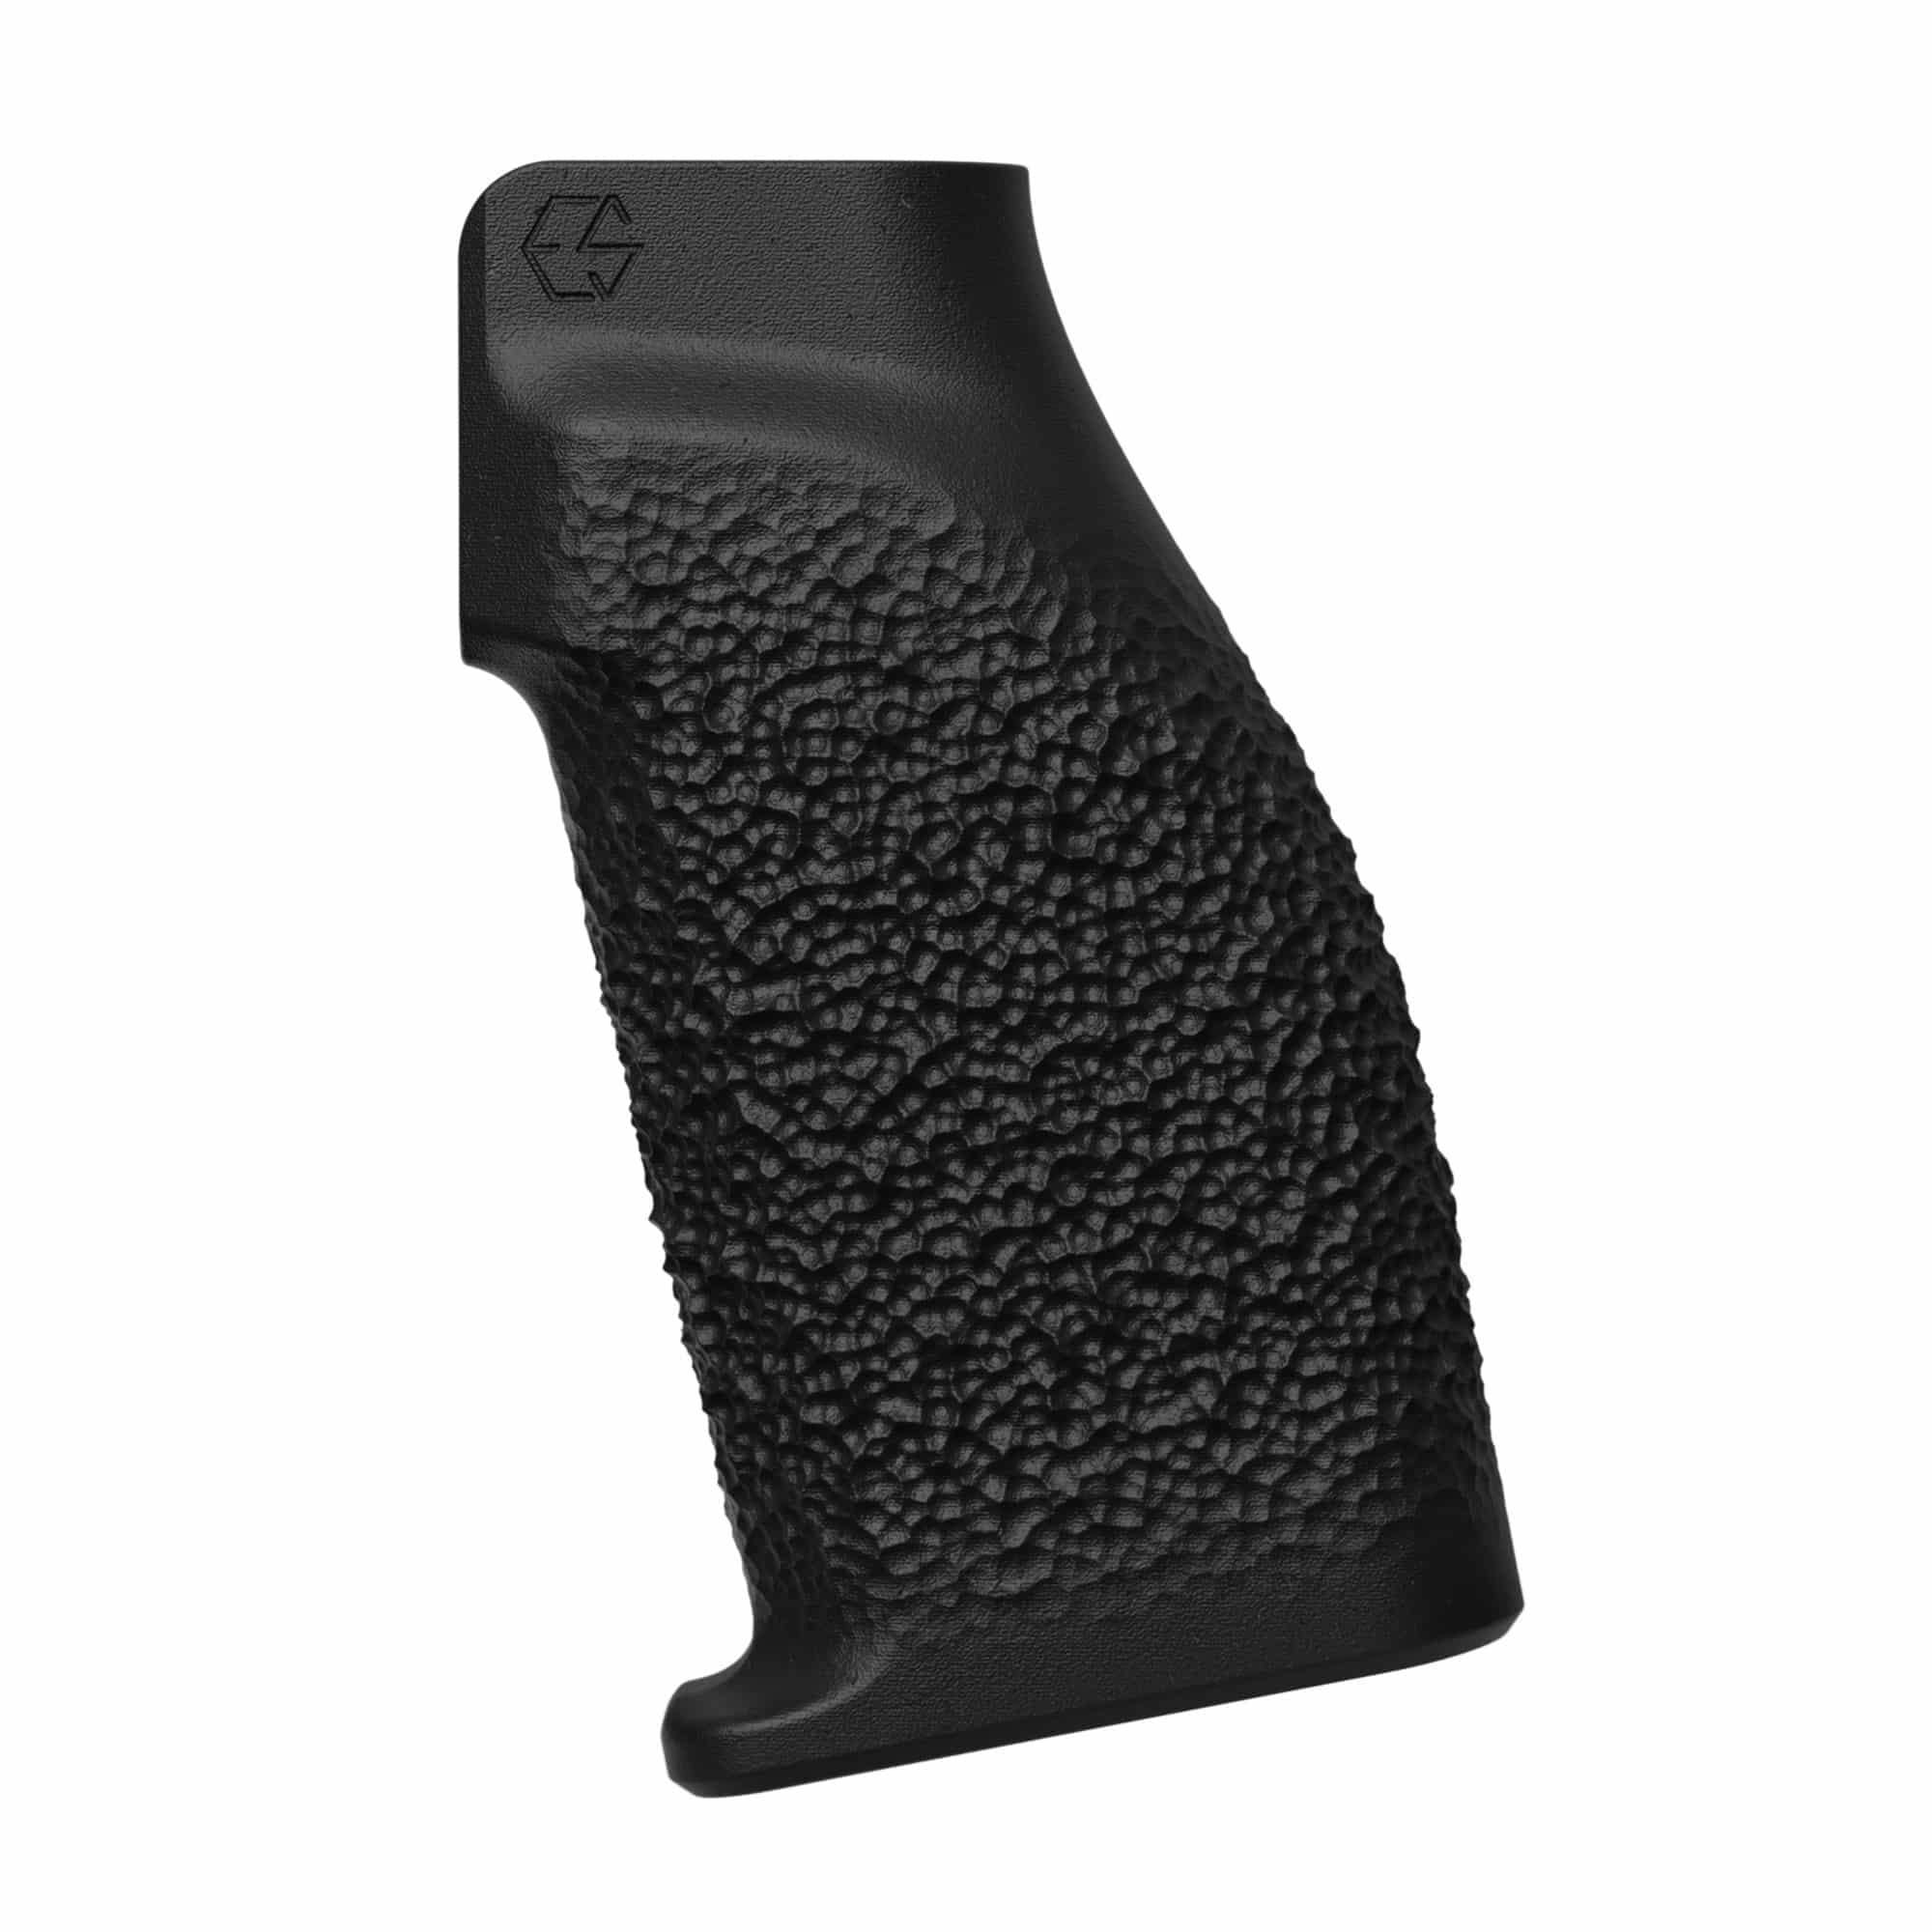 https://cityarsenal.com/product/edgar-sherman-design-esd-coarse-granite-grip-black-esd-arpg-tx/